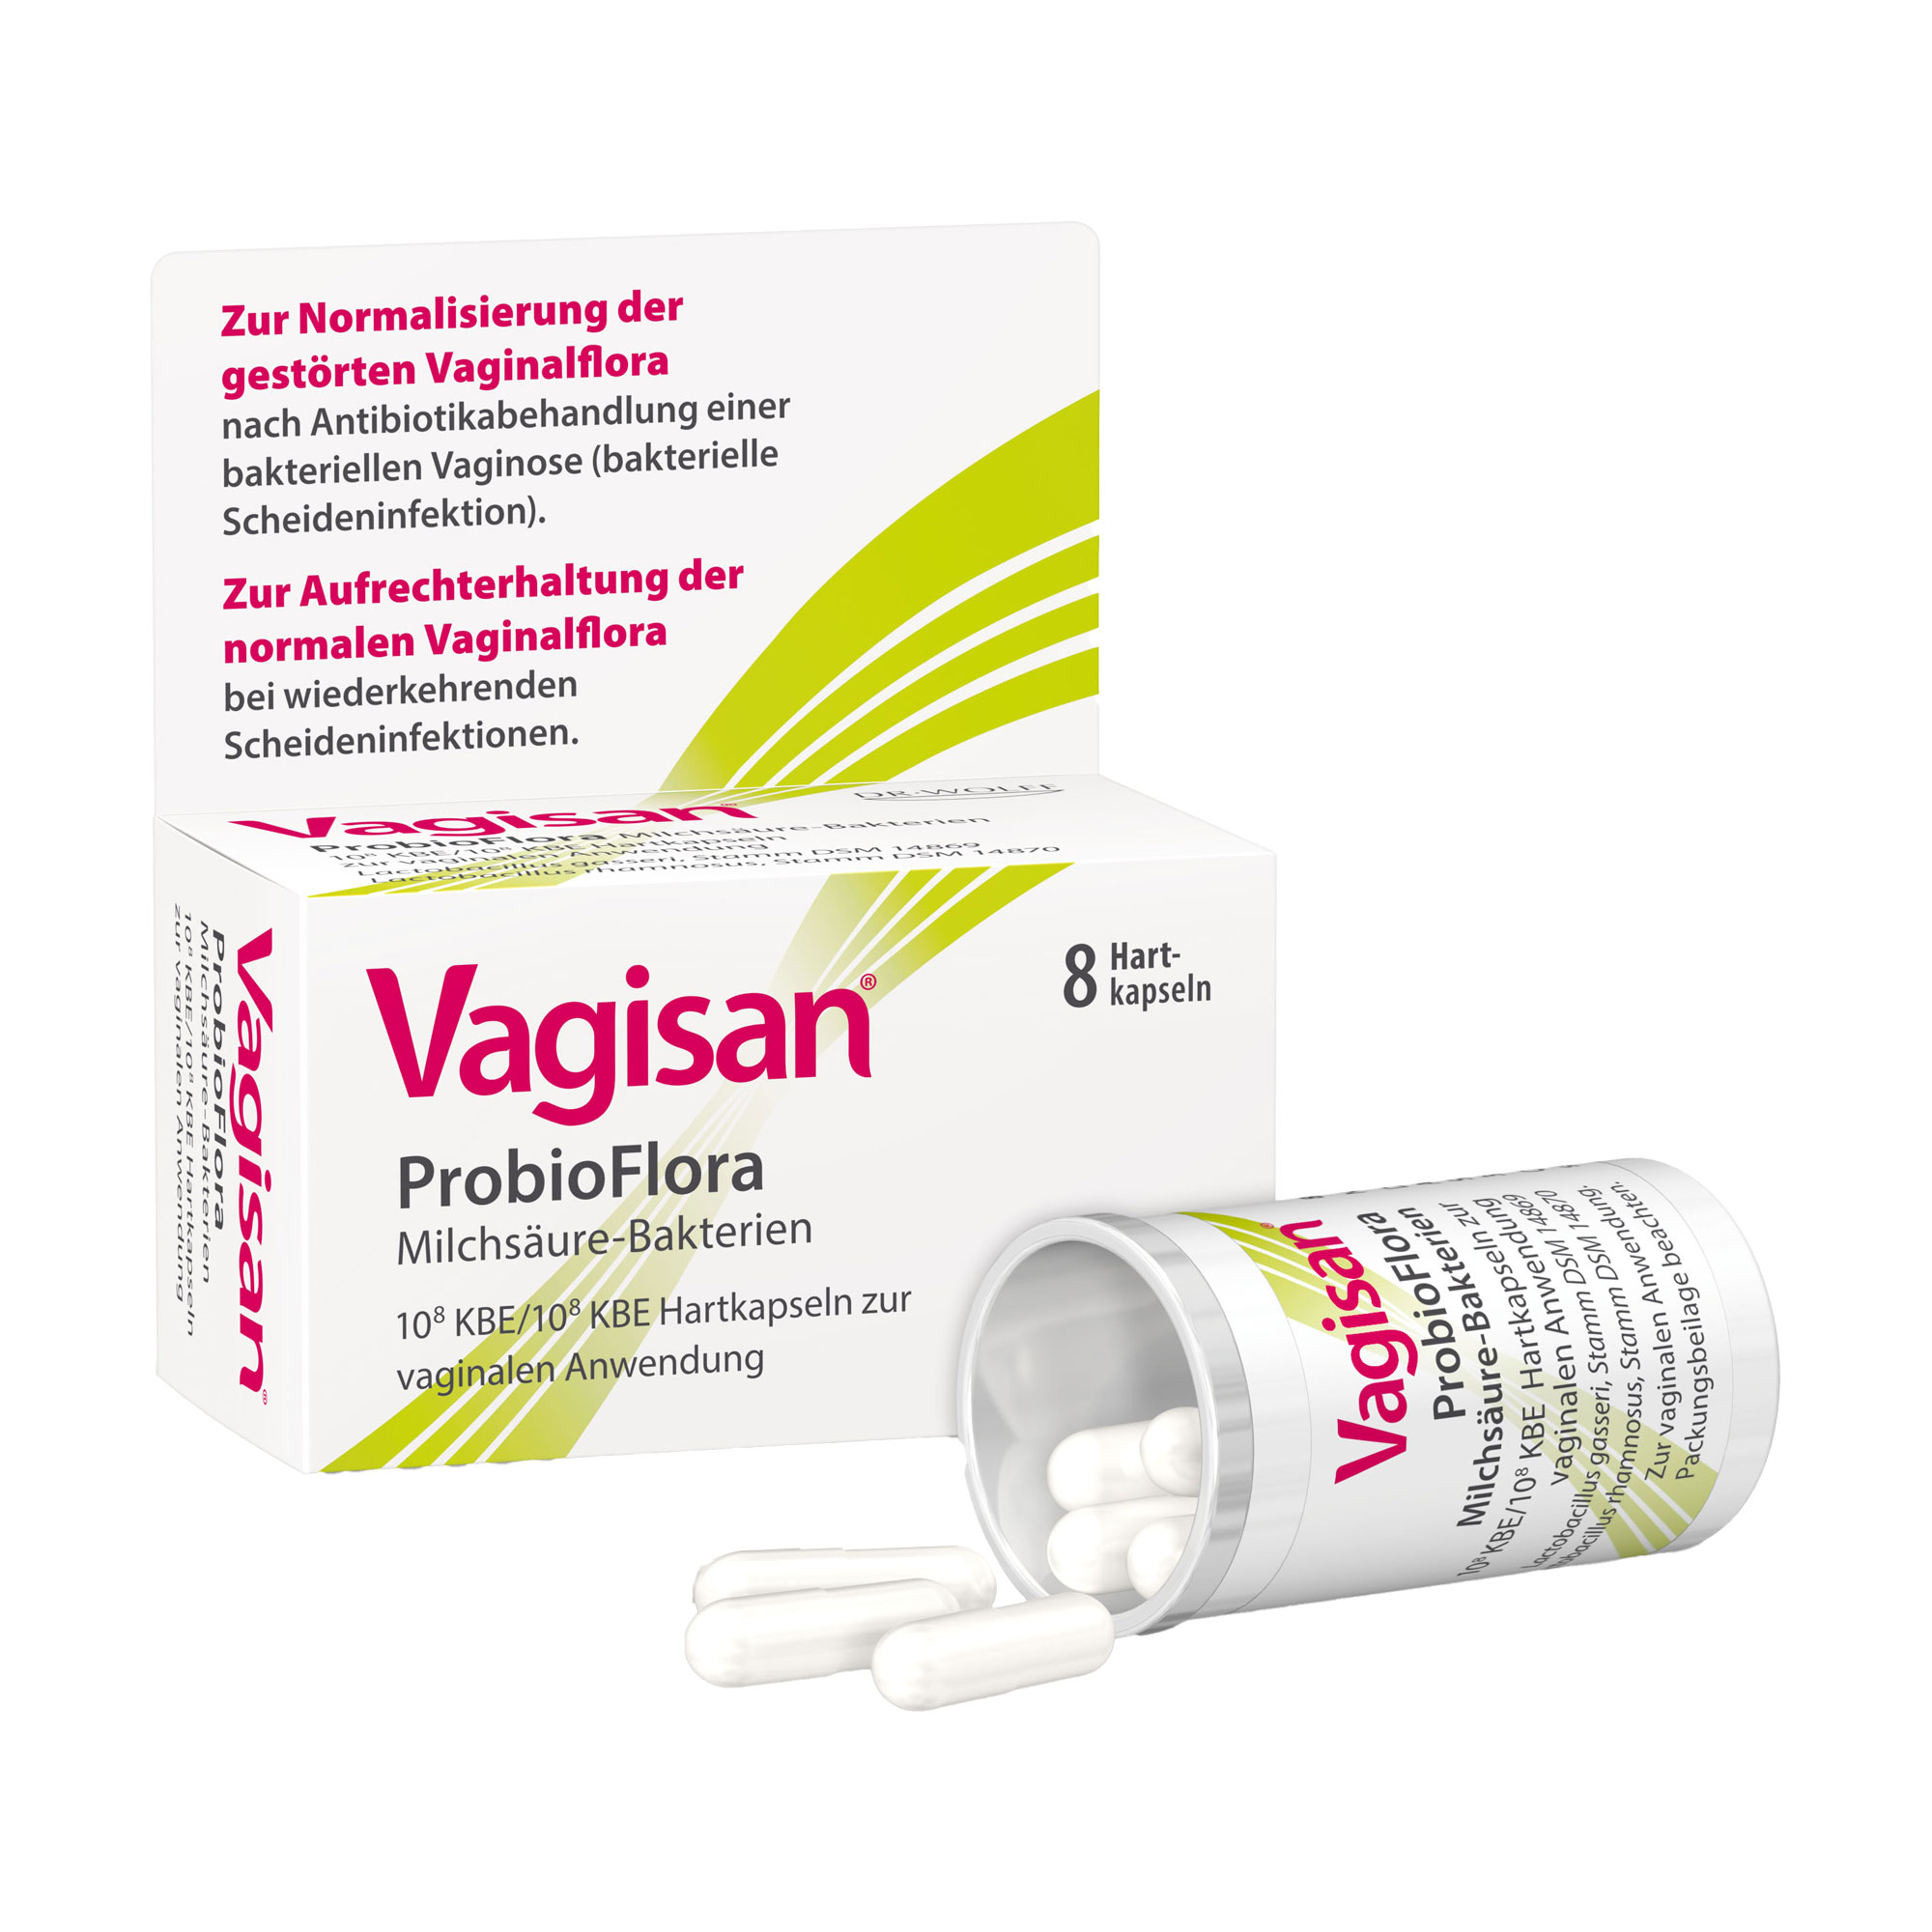 Zur Normalisierung einer gestörten bzw. zur Aufrechterhaltung der normalen Vaginalflora.